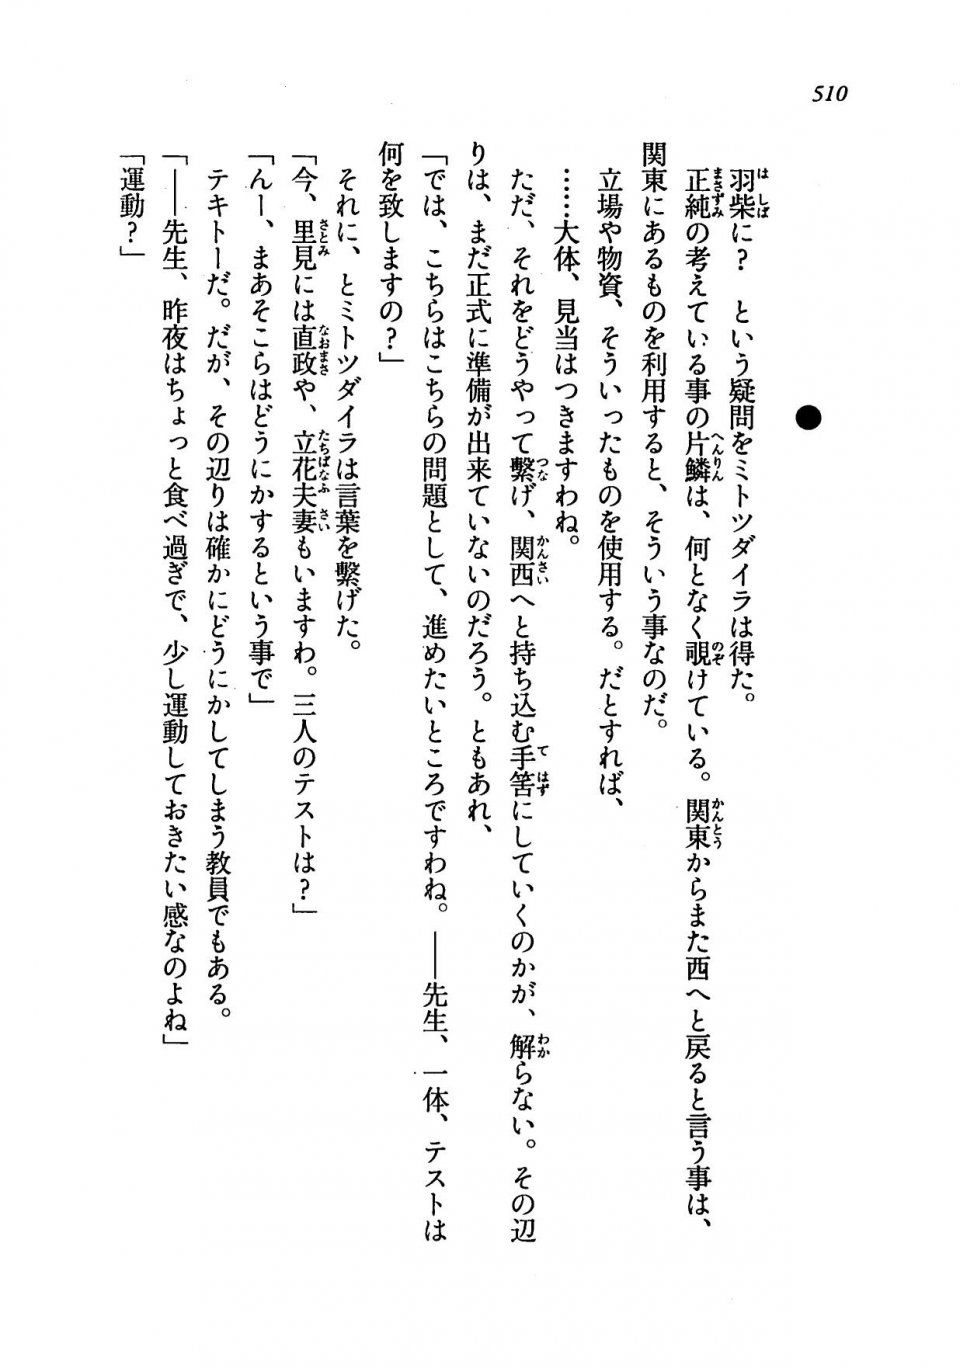 Kyoukai Senjou no Horizon LN Vol 19(8A) - Photo #510